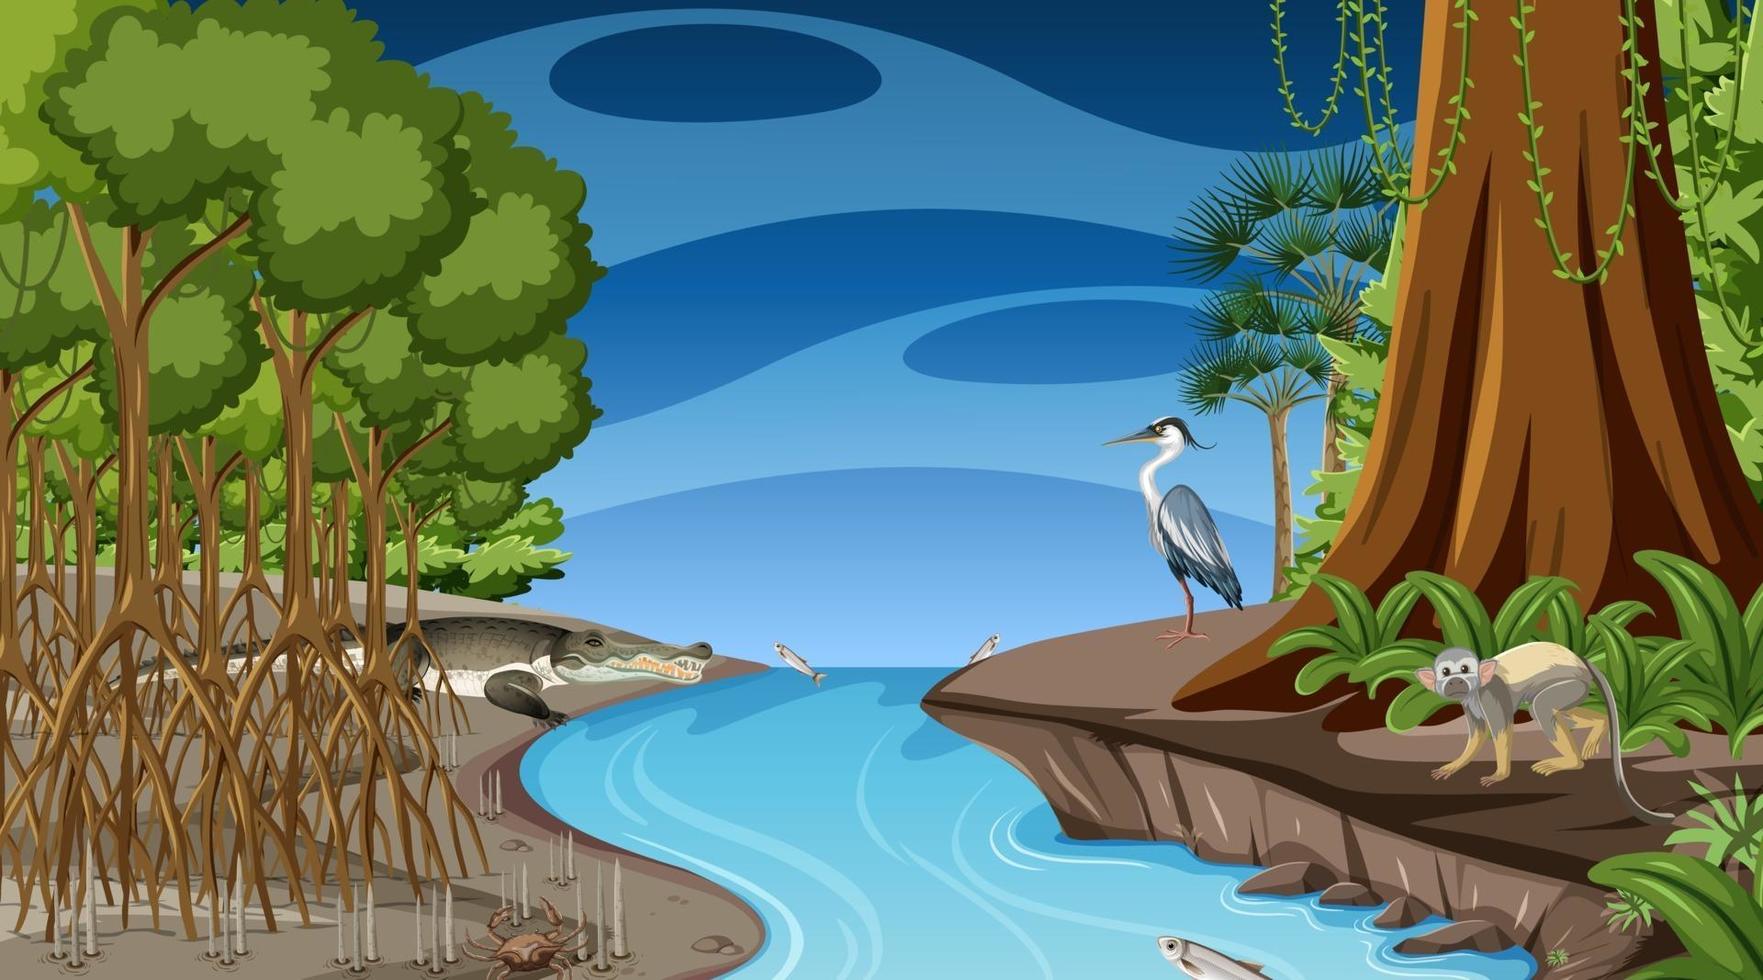 natuurscène met mangrovebos 's nachts in cartoonstijl vector